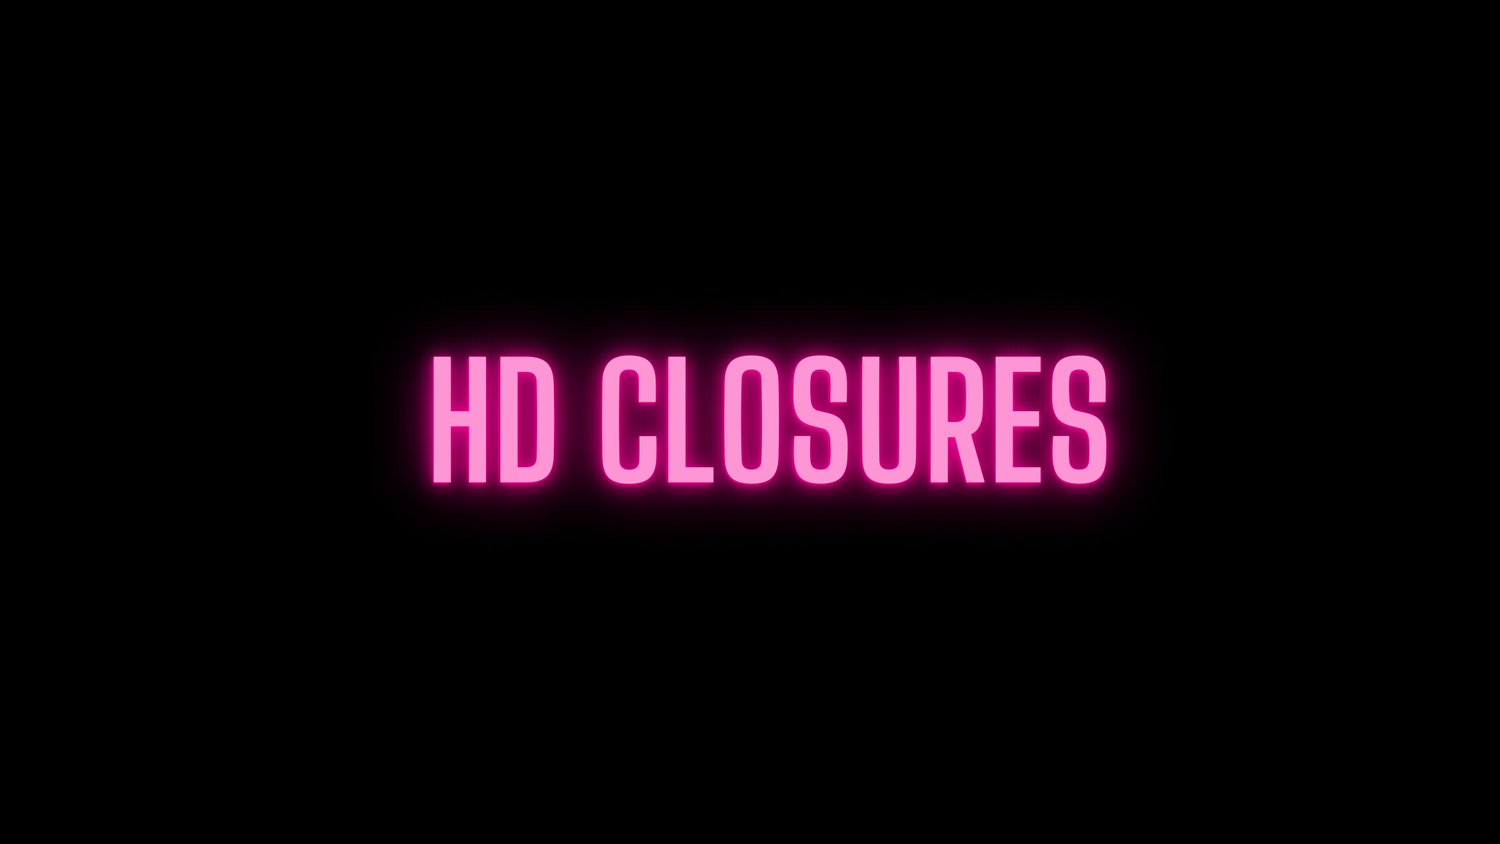 HD Closures